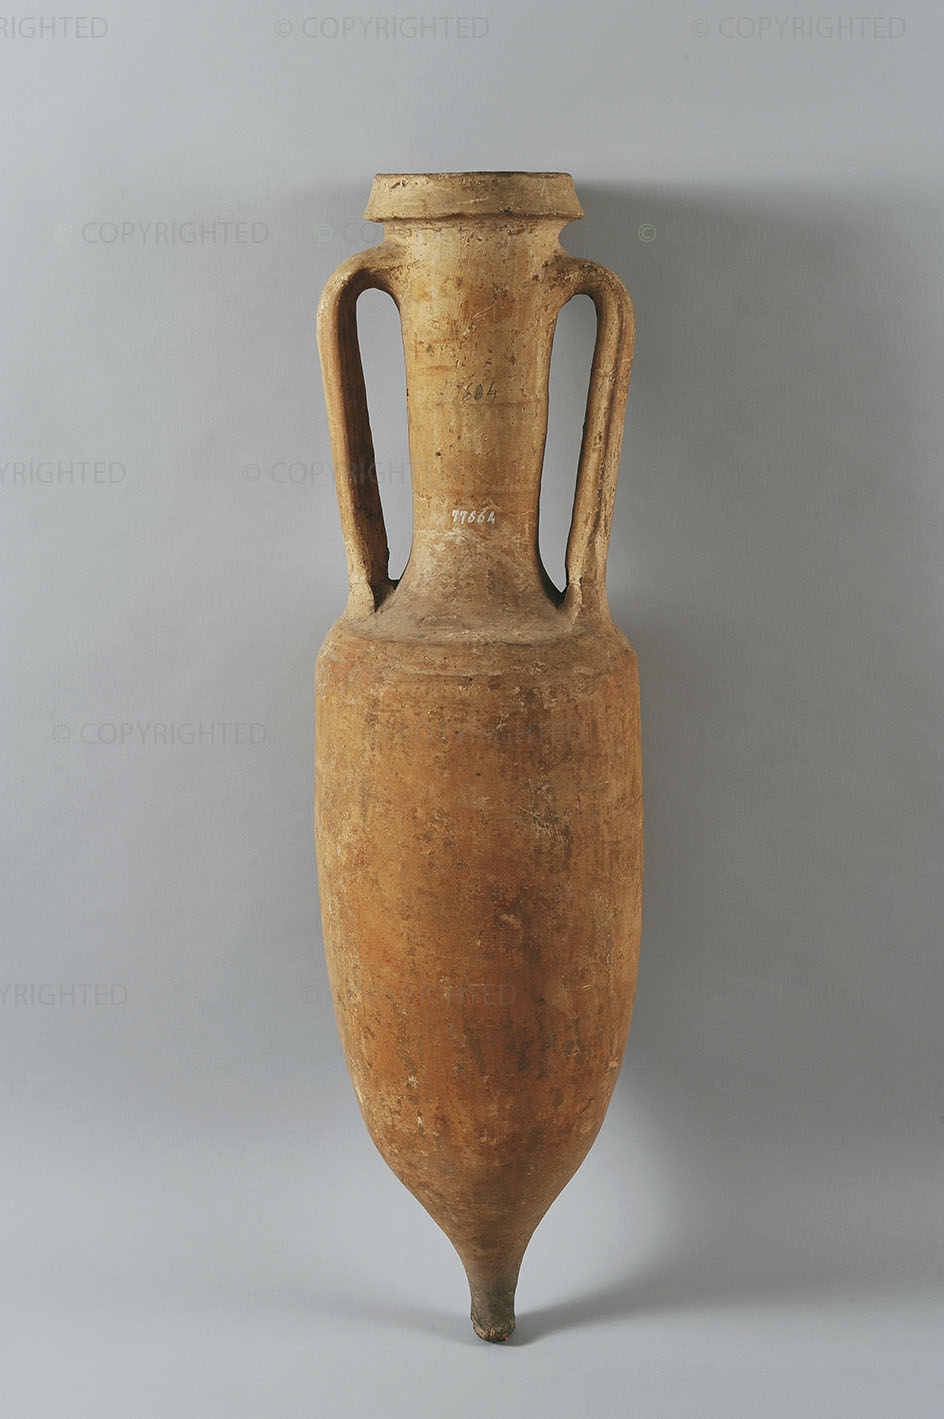 Dressel 1B wine amphora